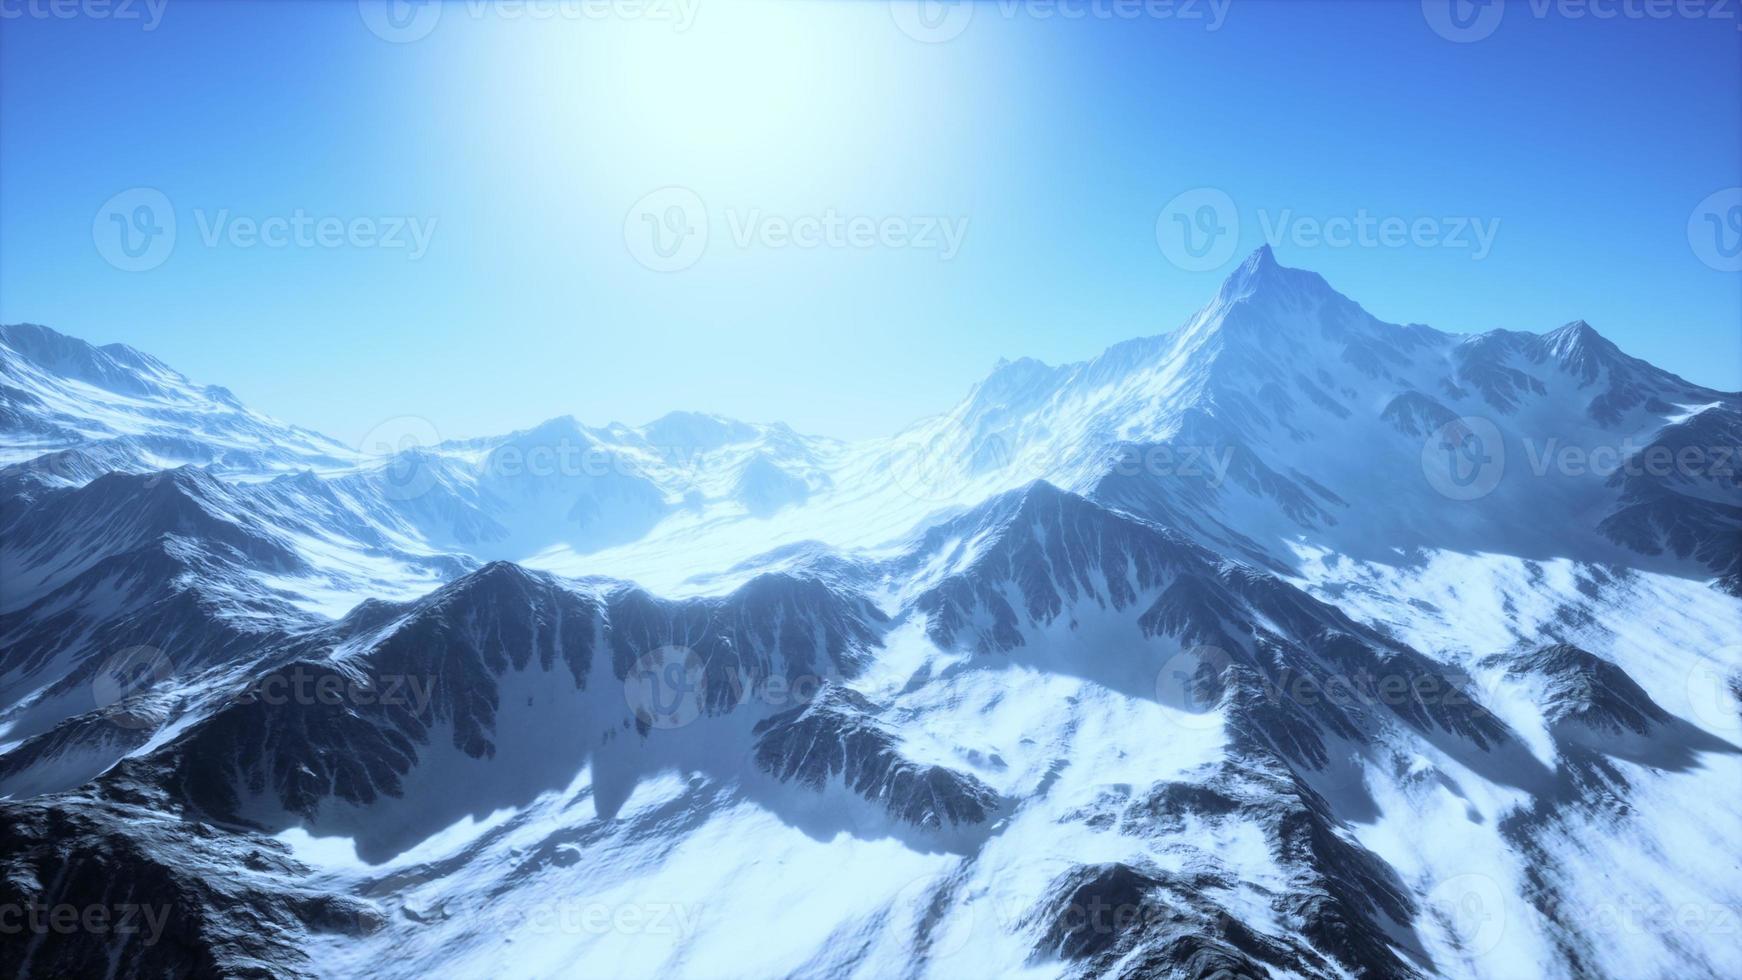 Panoramablick auf die Berge mit schneebedeckten Gipfeln und Gletschern foto